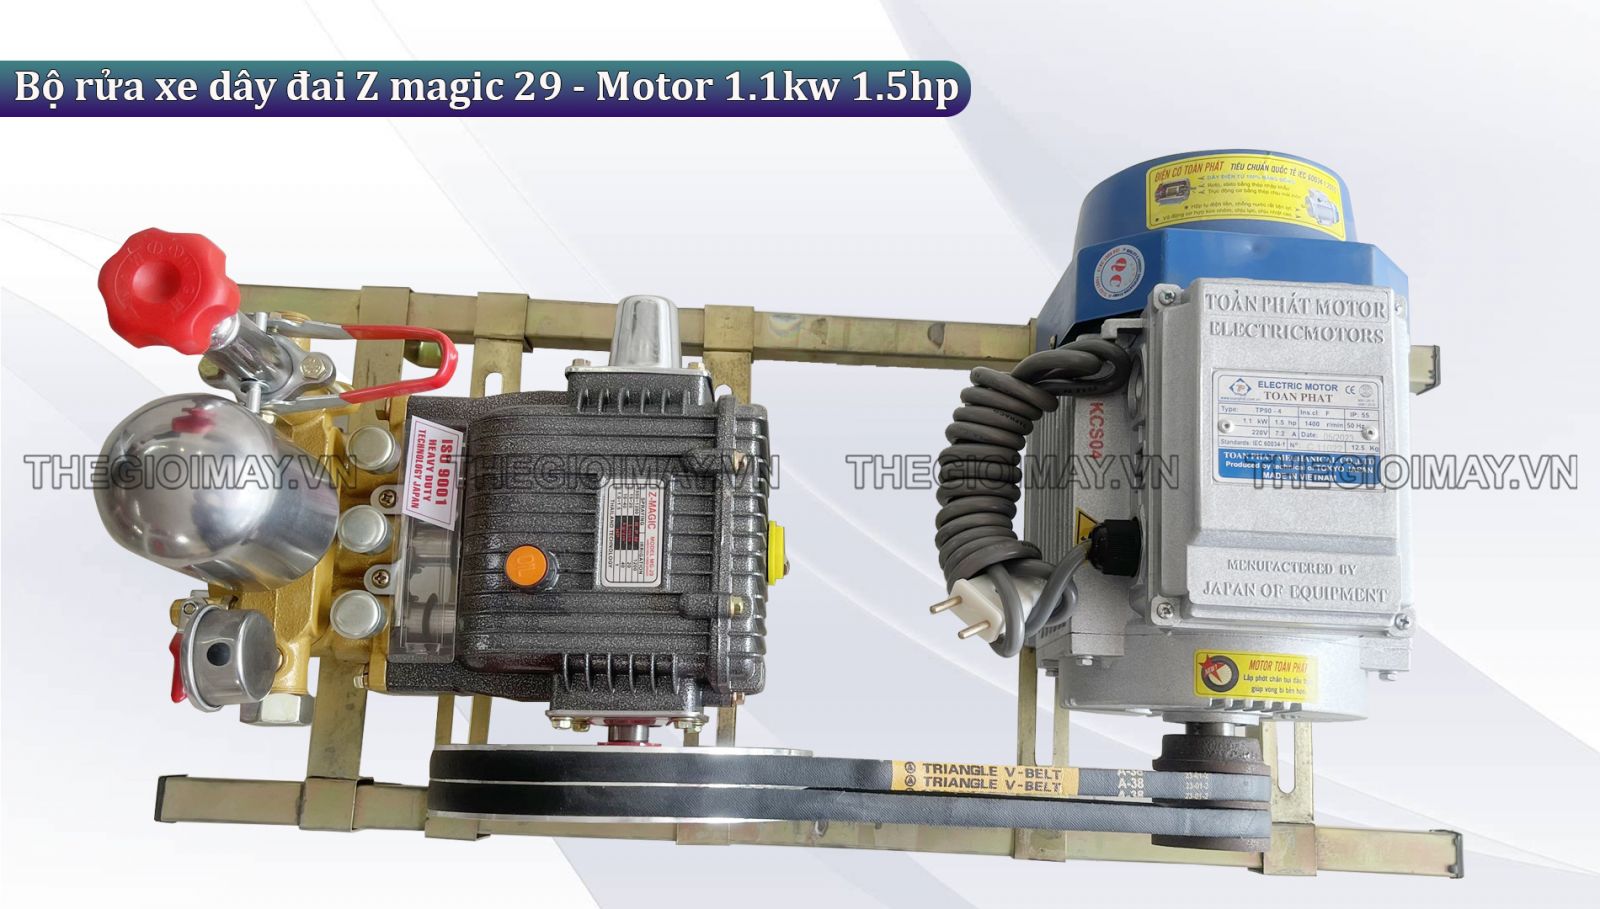 Ưu điểm bộ rửa xe dây đai Z magic 29 - Motor 1.1kw 1.5hp